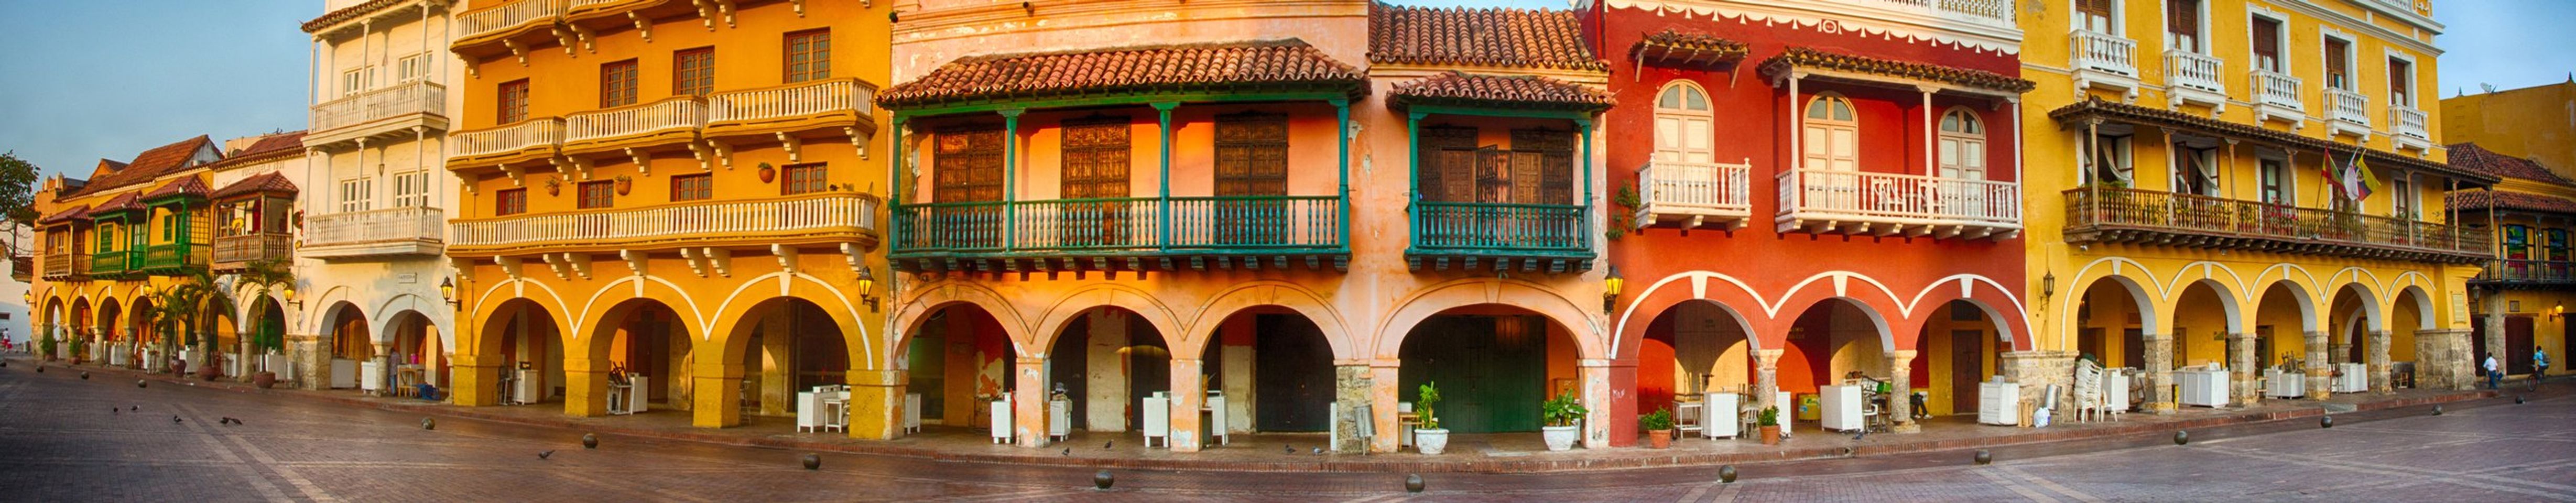 Descubre las joyas ocultas de Cartagena antes de tu viaje.